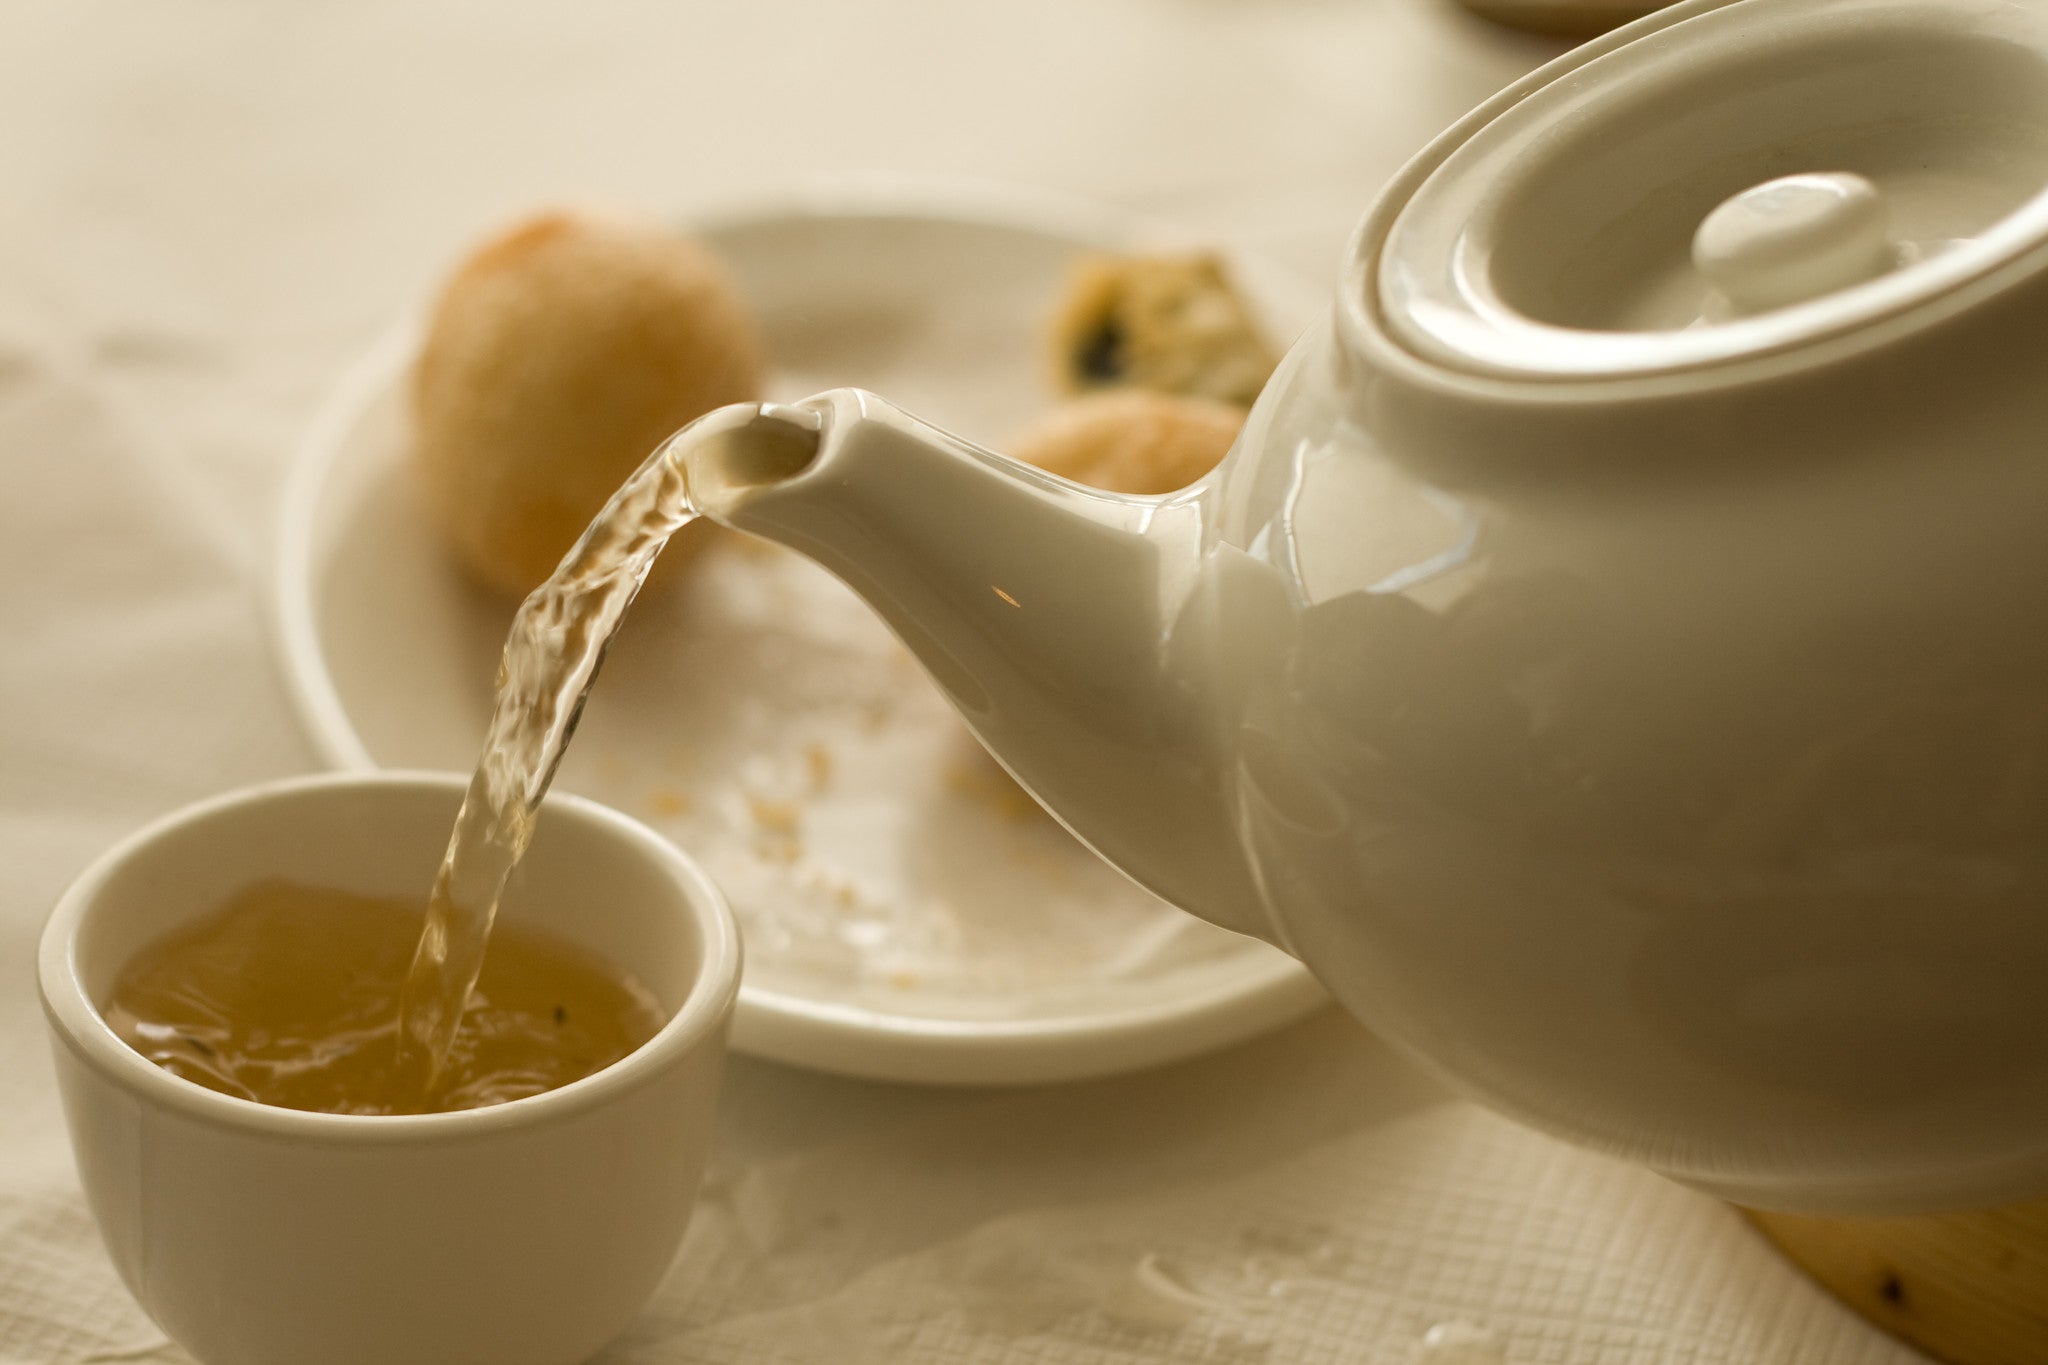 The Perfect Teaspoon - Golden Moon Tea